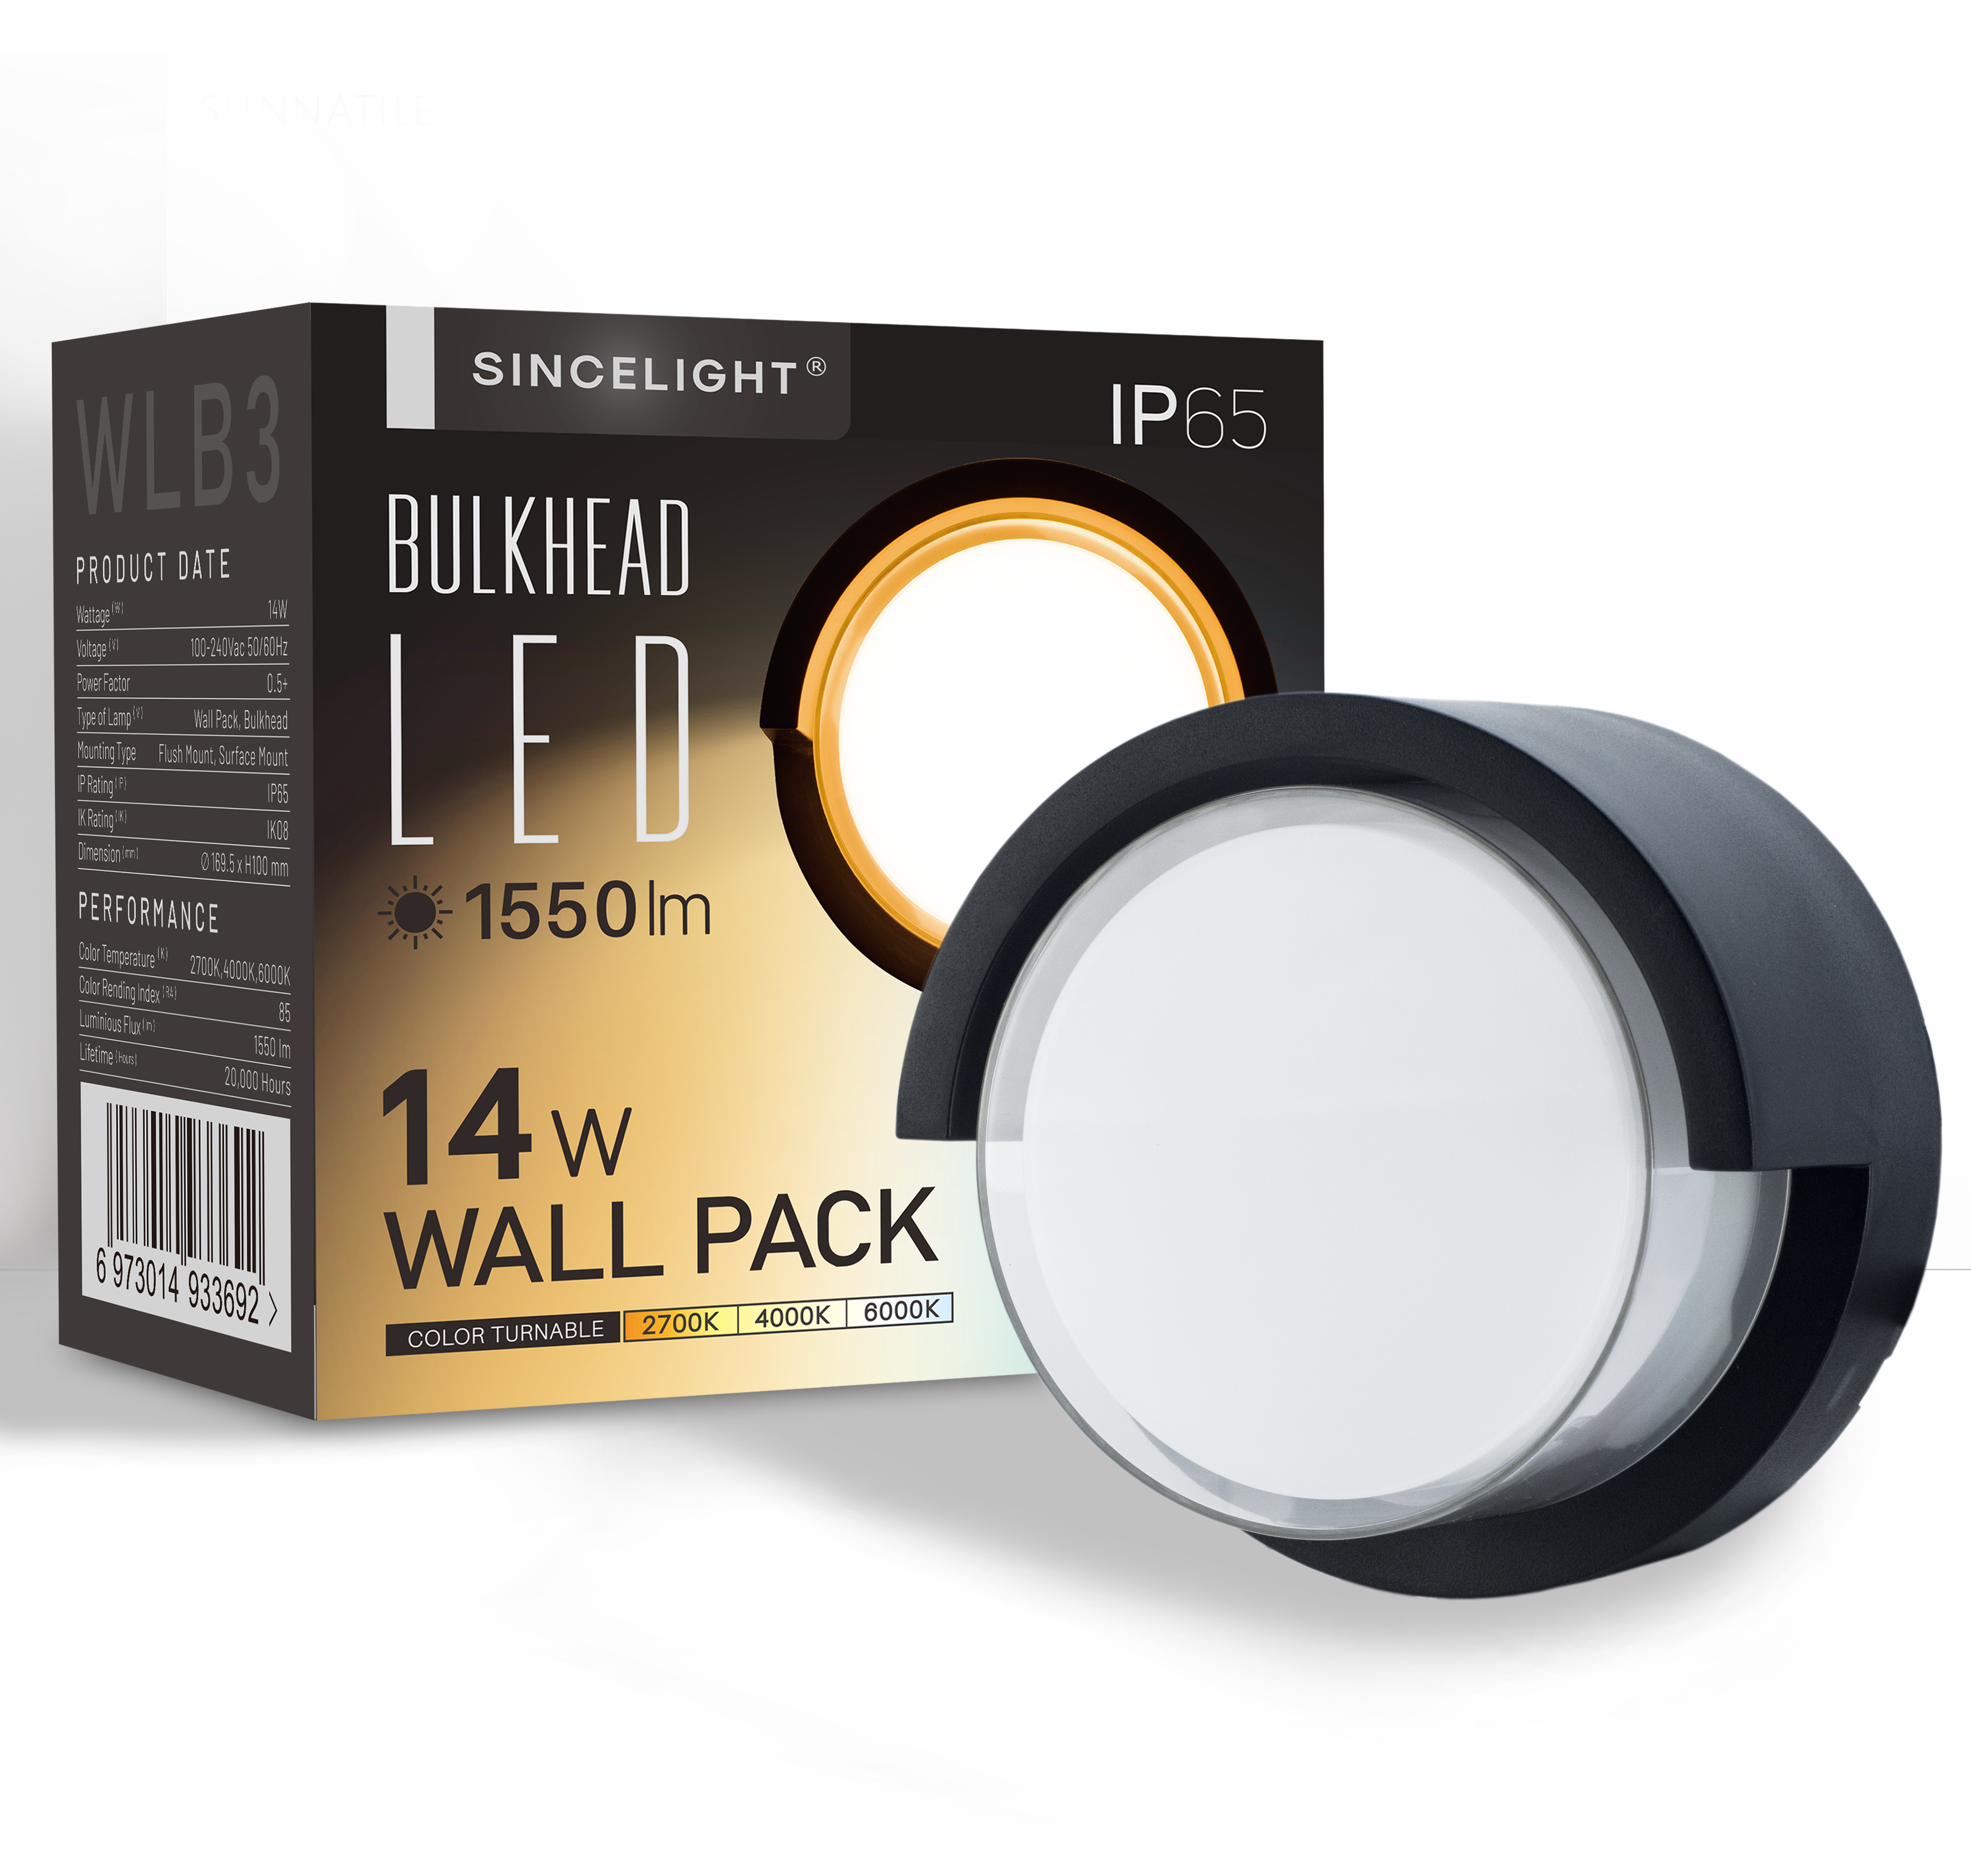 LED Wall Pack Light 14W ( WLB3 Bulkhead )